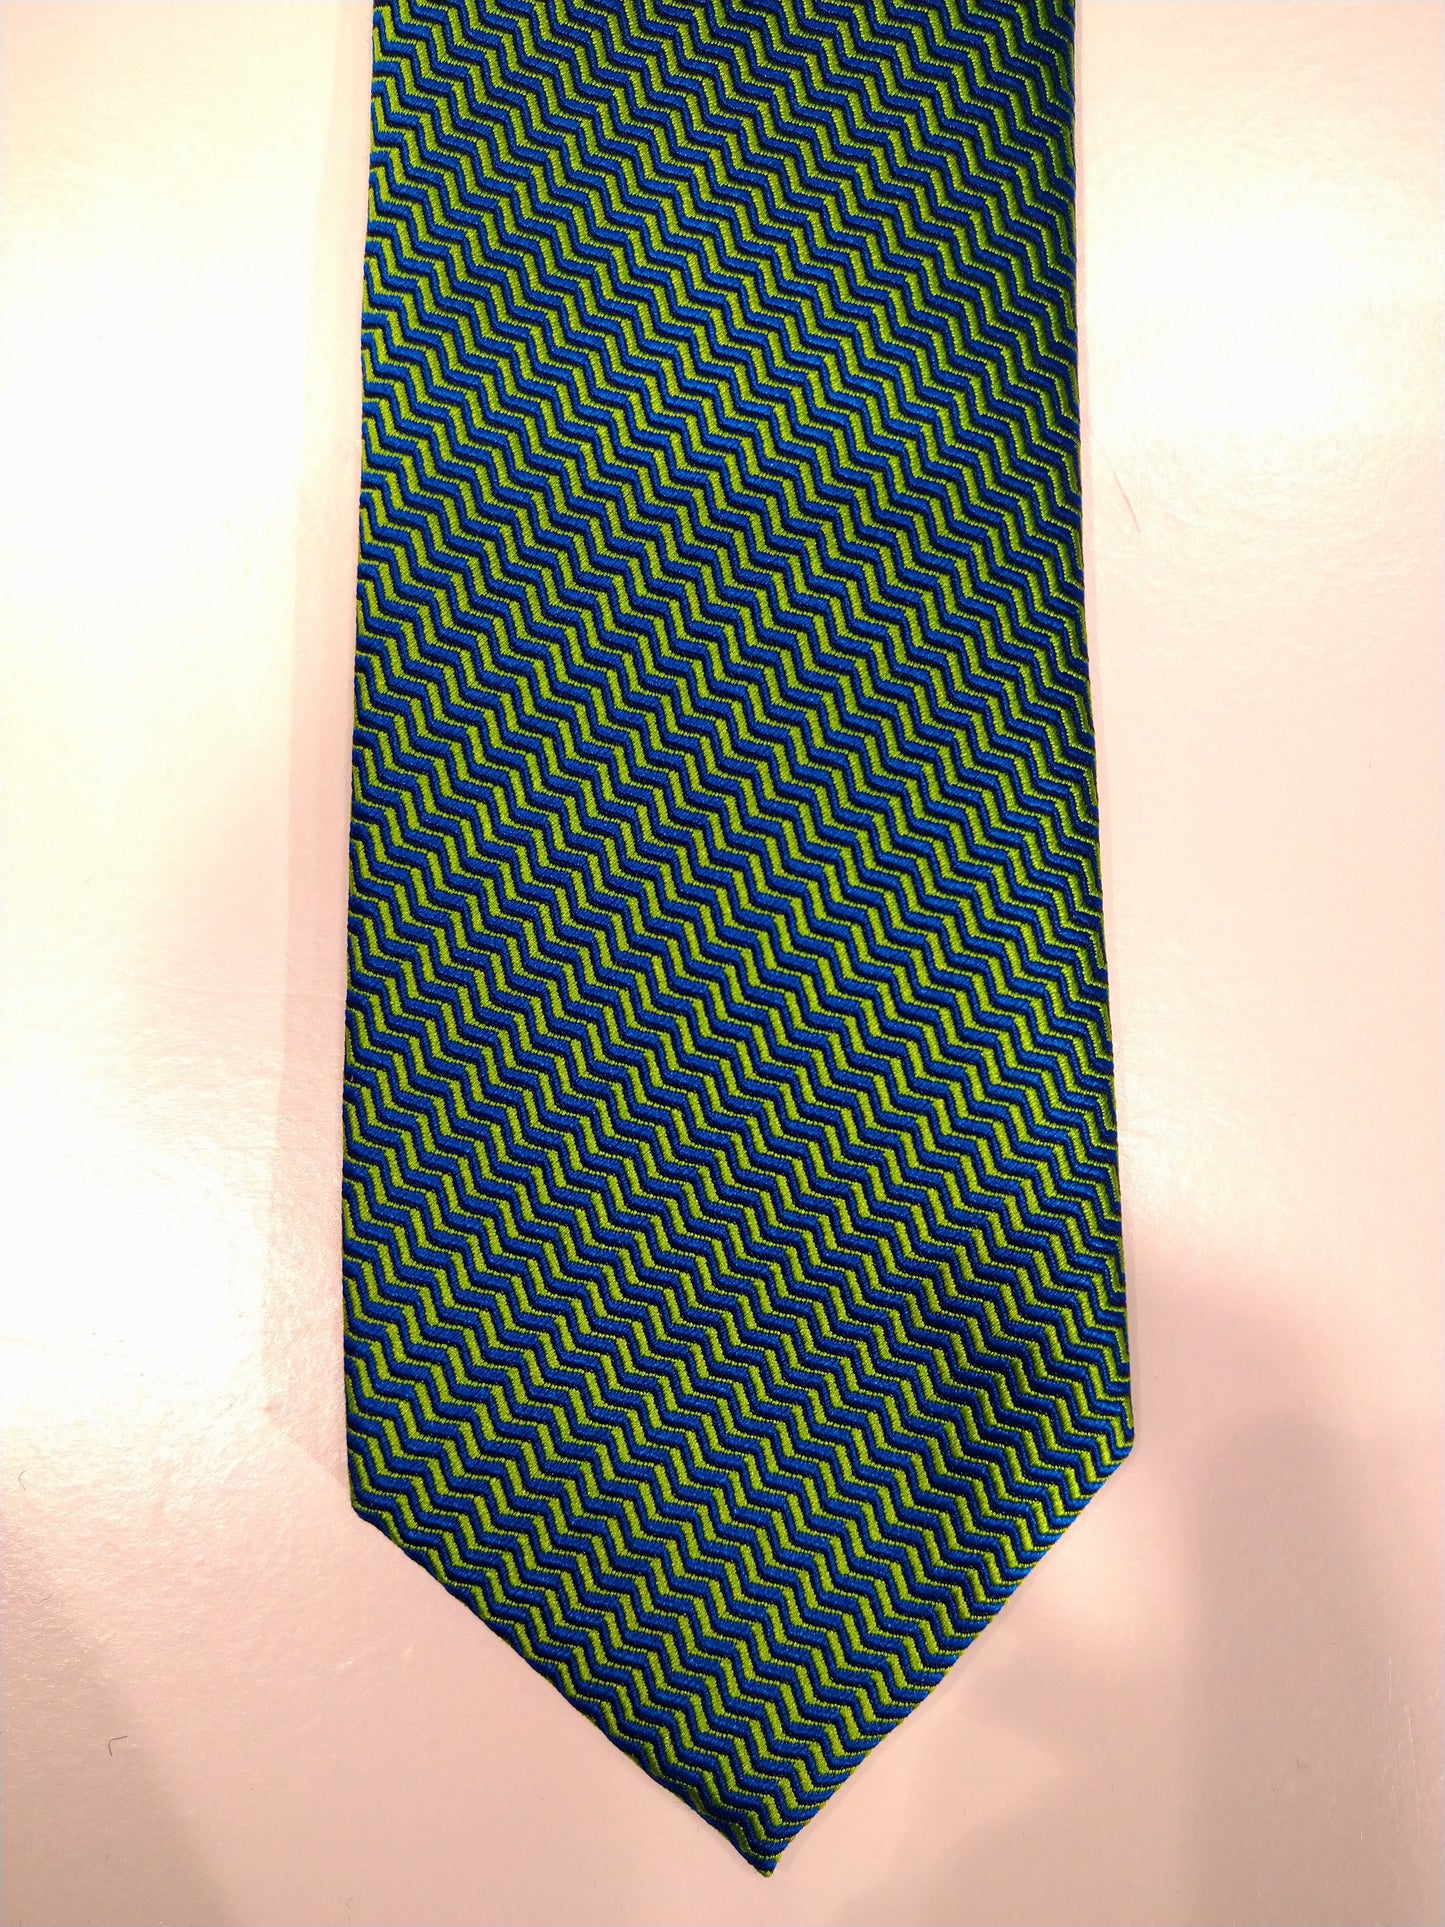 Max Goodman Silk la corbata de seda. Verde con motivo amarillo.